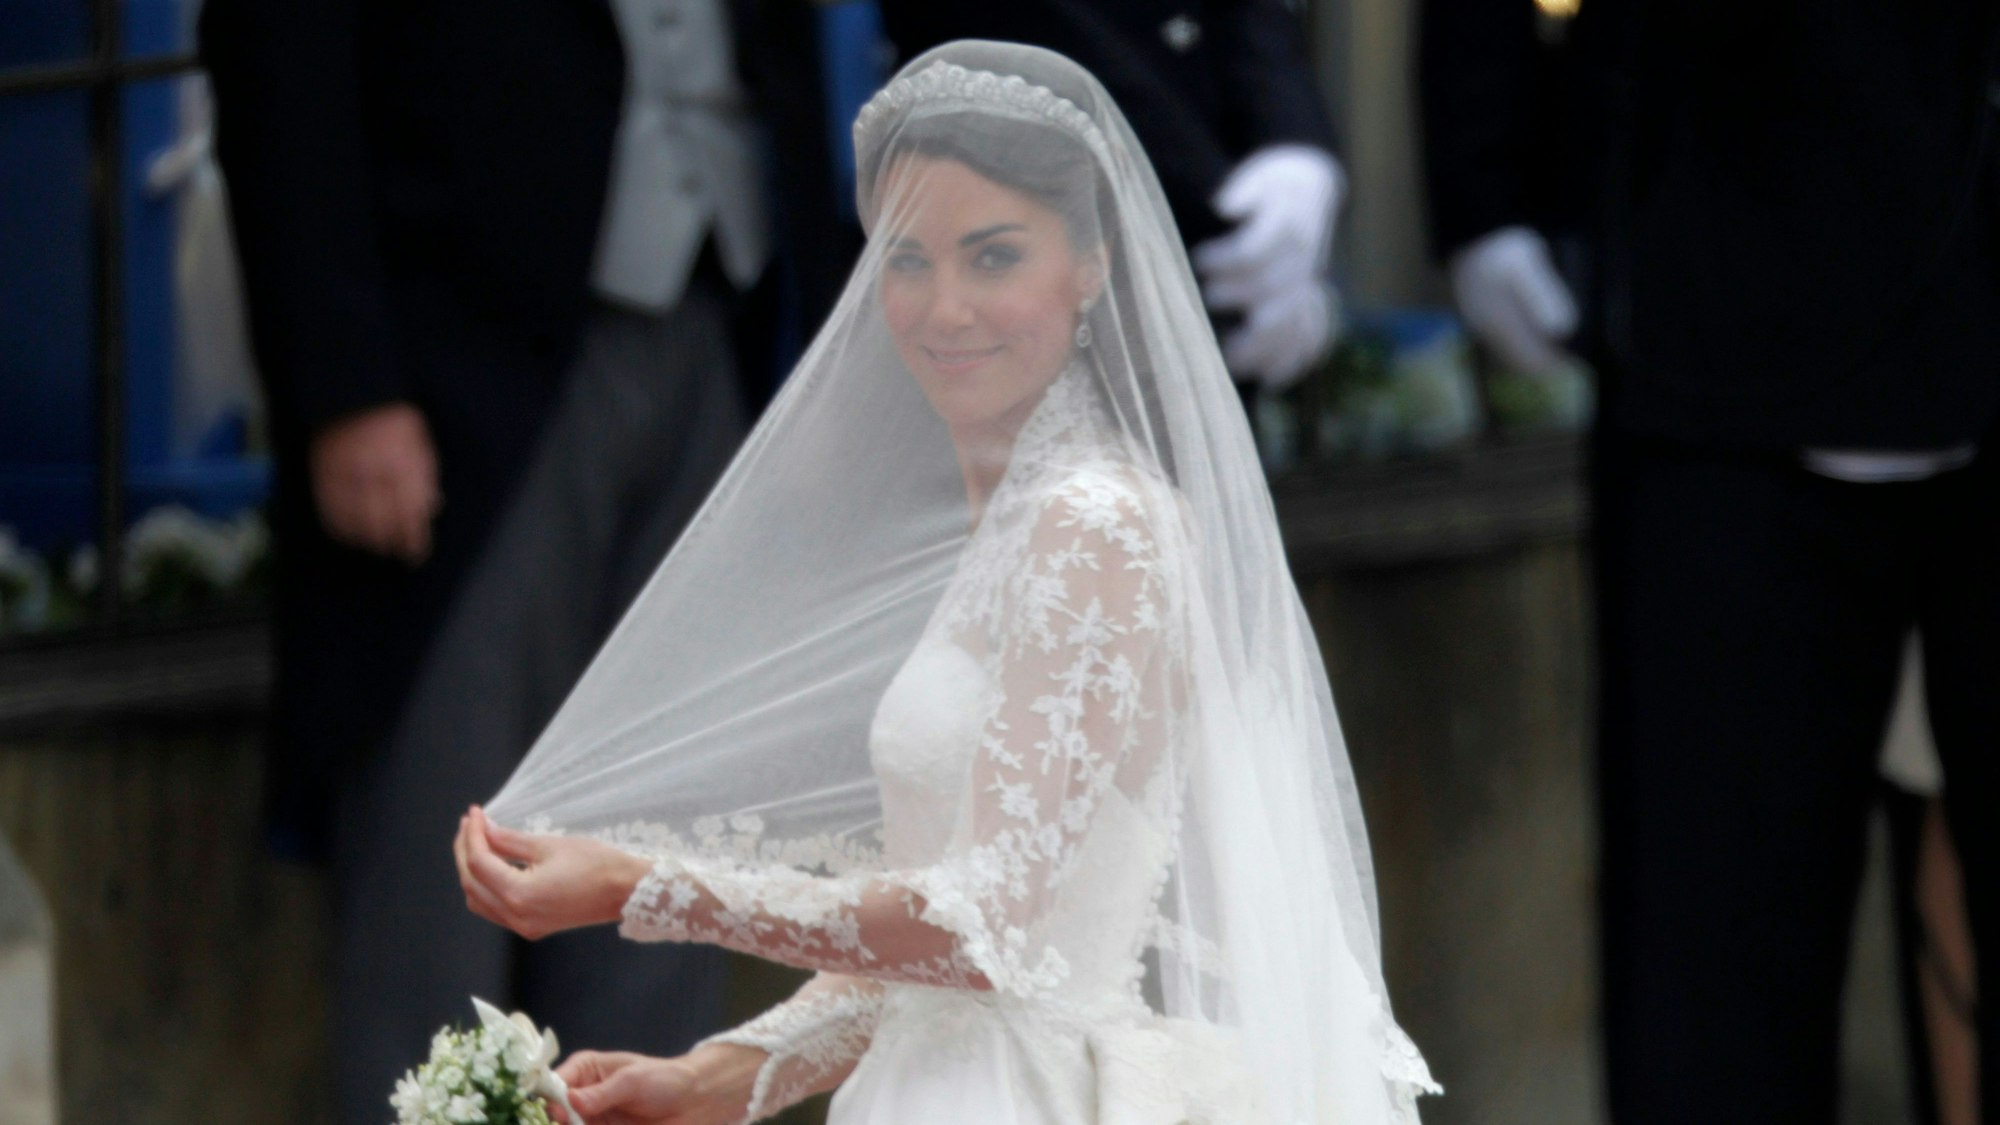 Kate Middleton trifft zu ihrer Hochzeitszeremonie ein